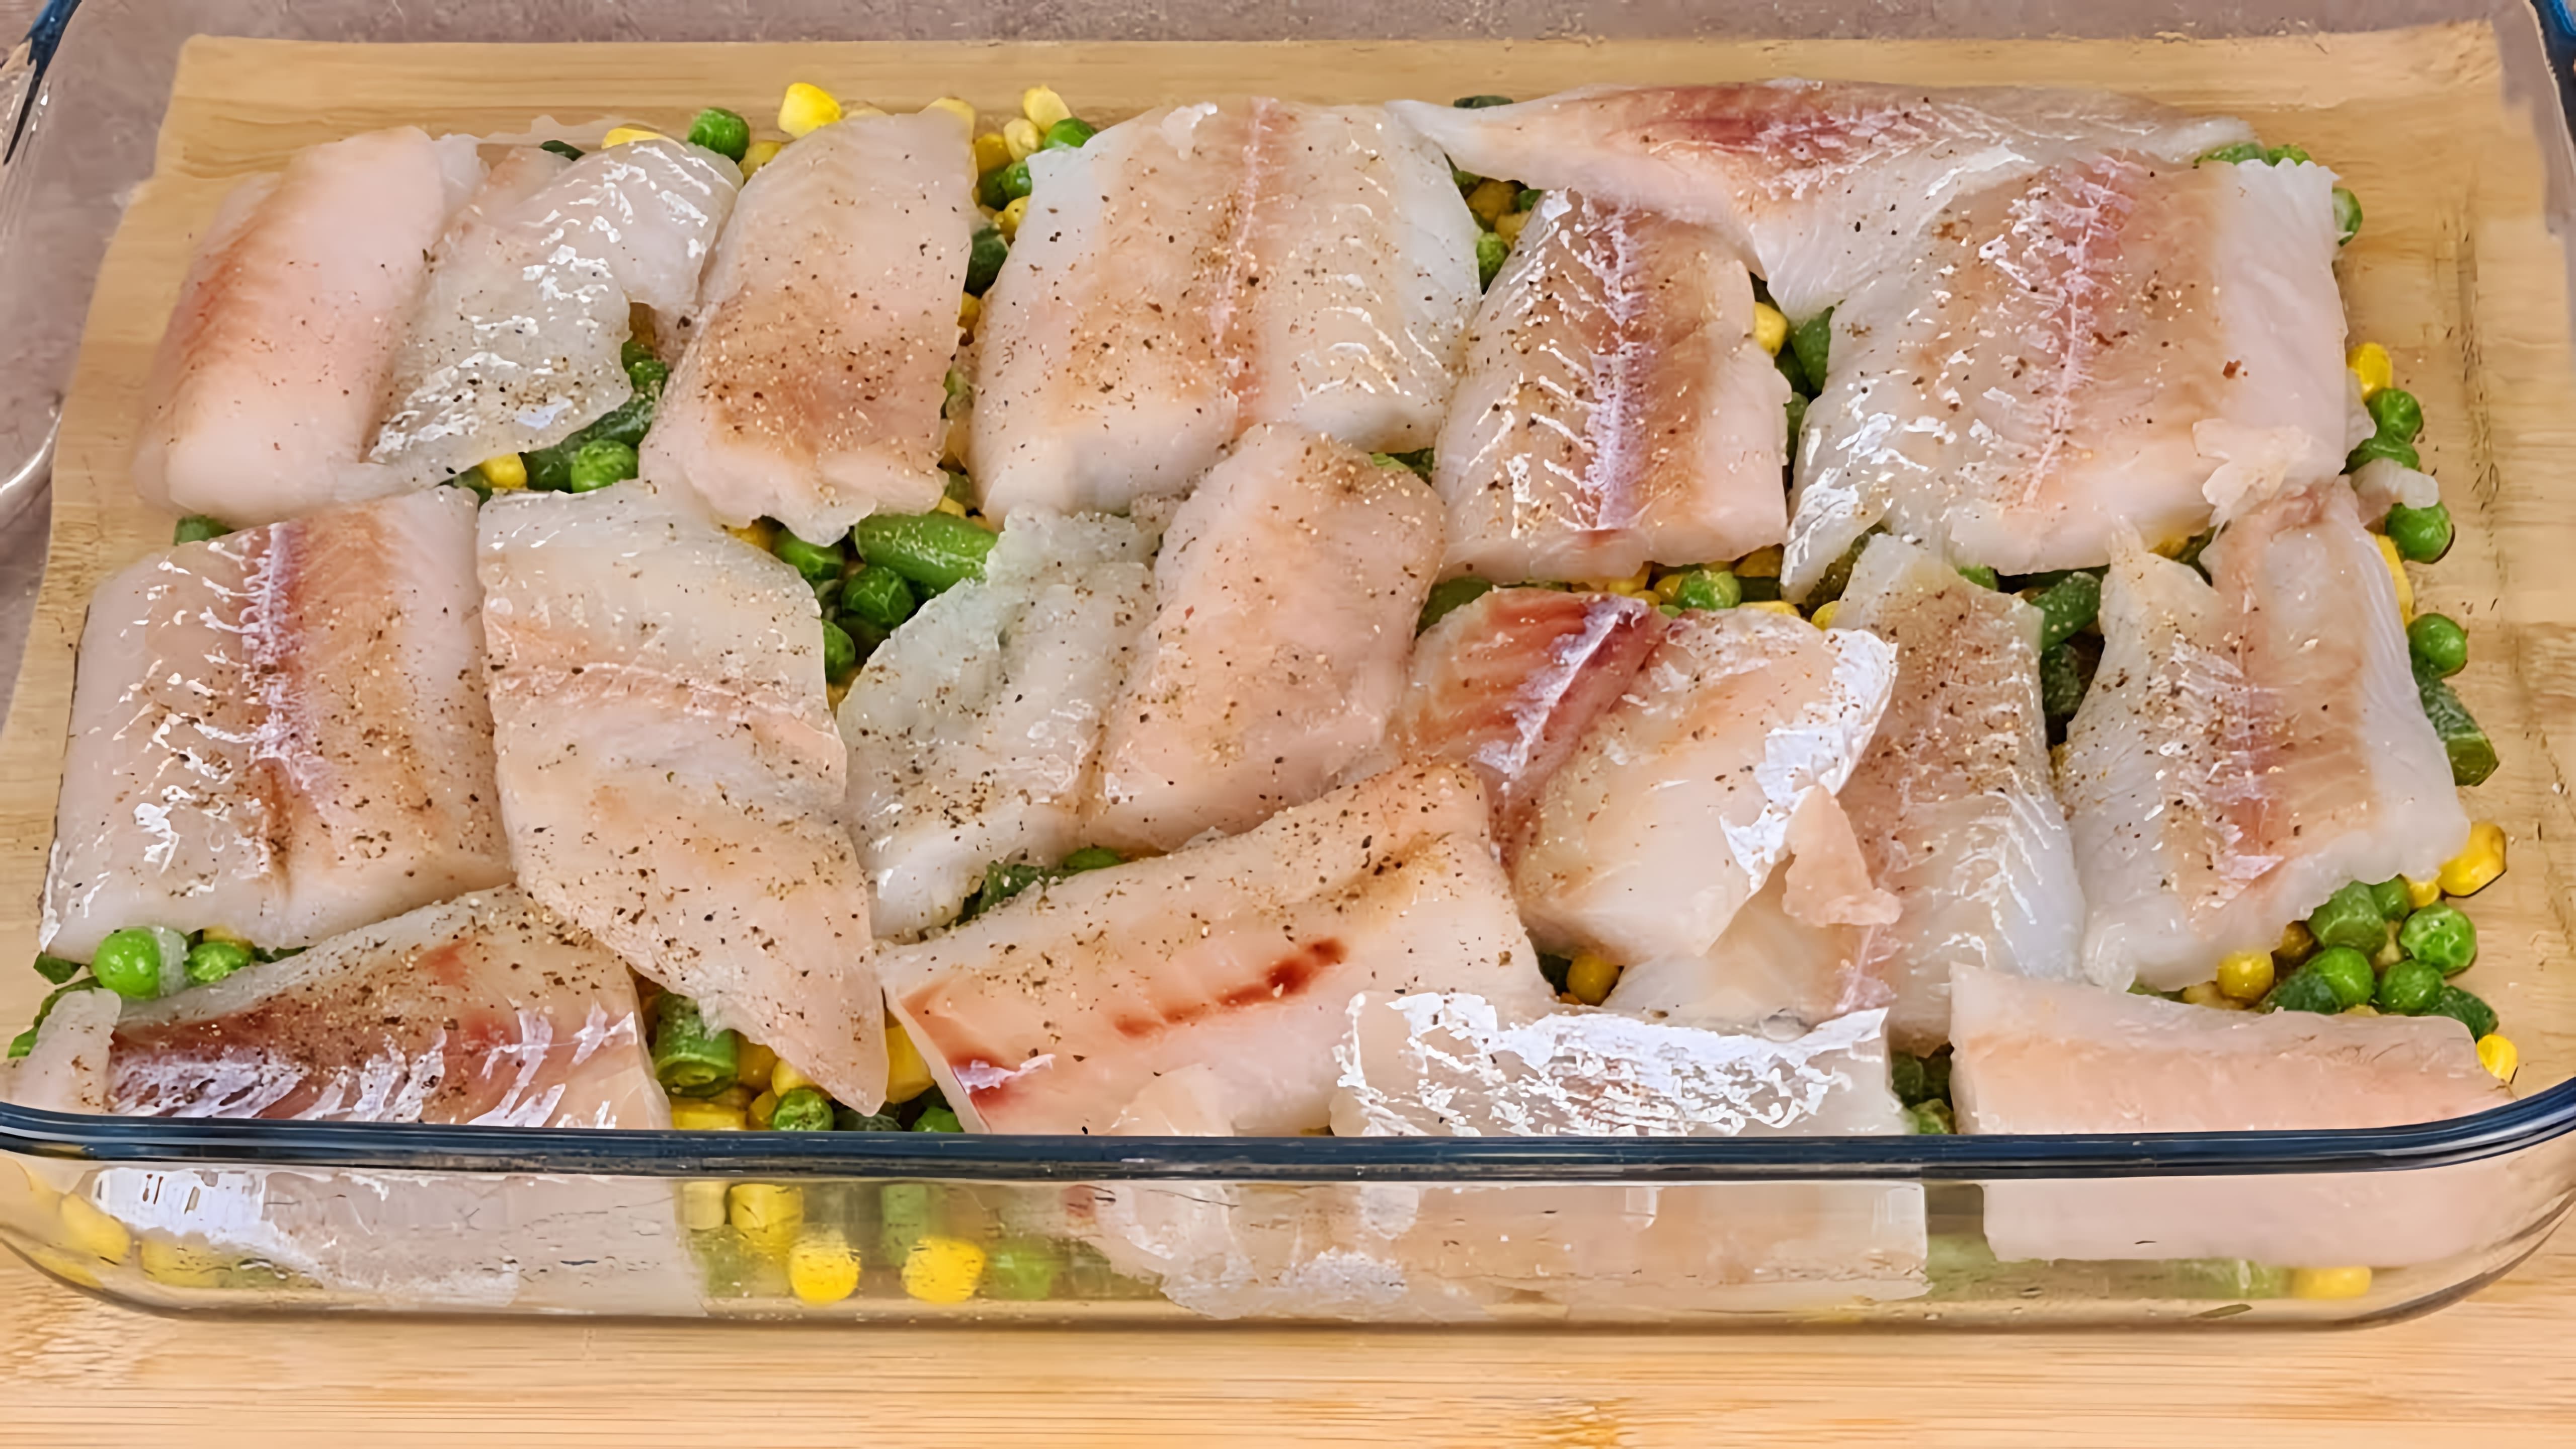 Видео рецепт запеченной рыбы с овощами как здоровый и низкокалорийный вариант питания для похудения